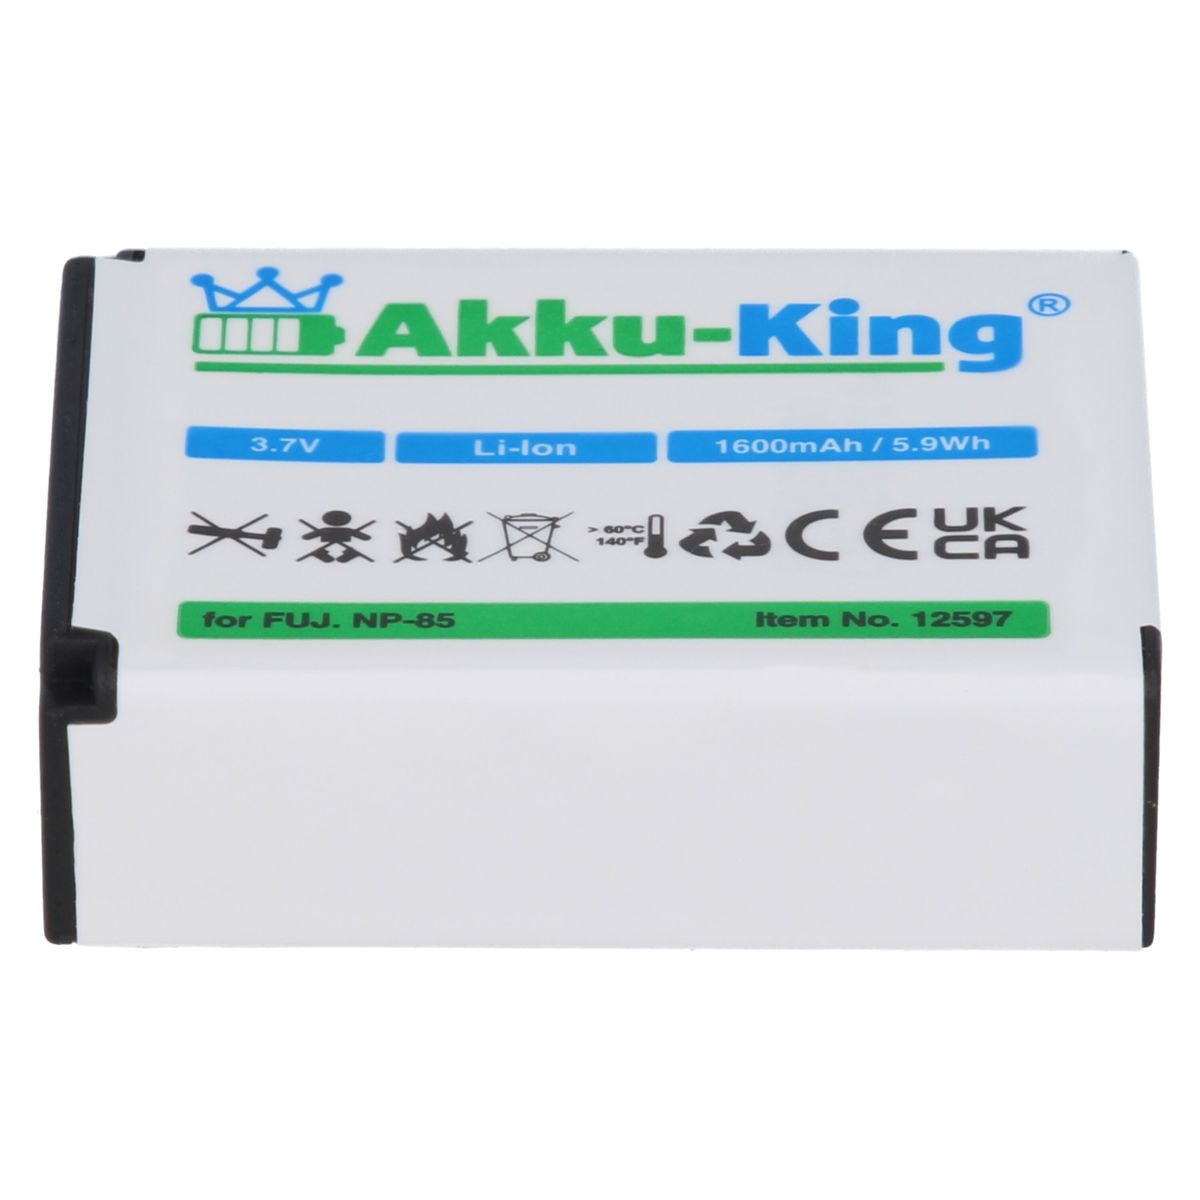 Fuji Li-Ion mit 3.7 Akku AKKU-KING kompatibel NP-85 Volt, 1600mAh Kamera-Akku,